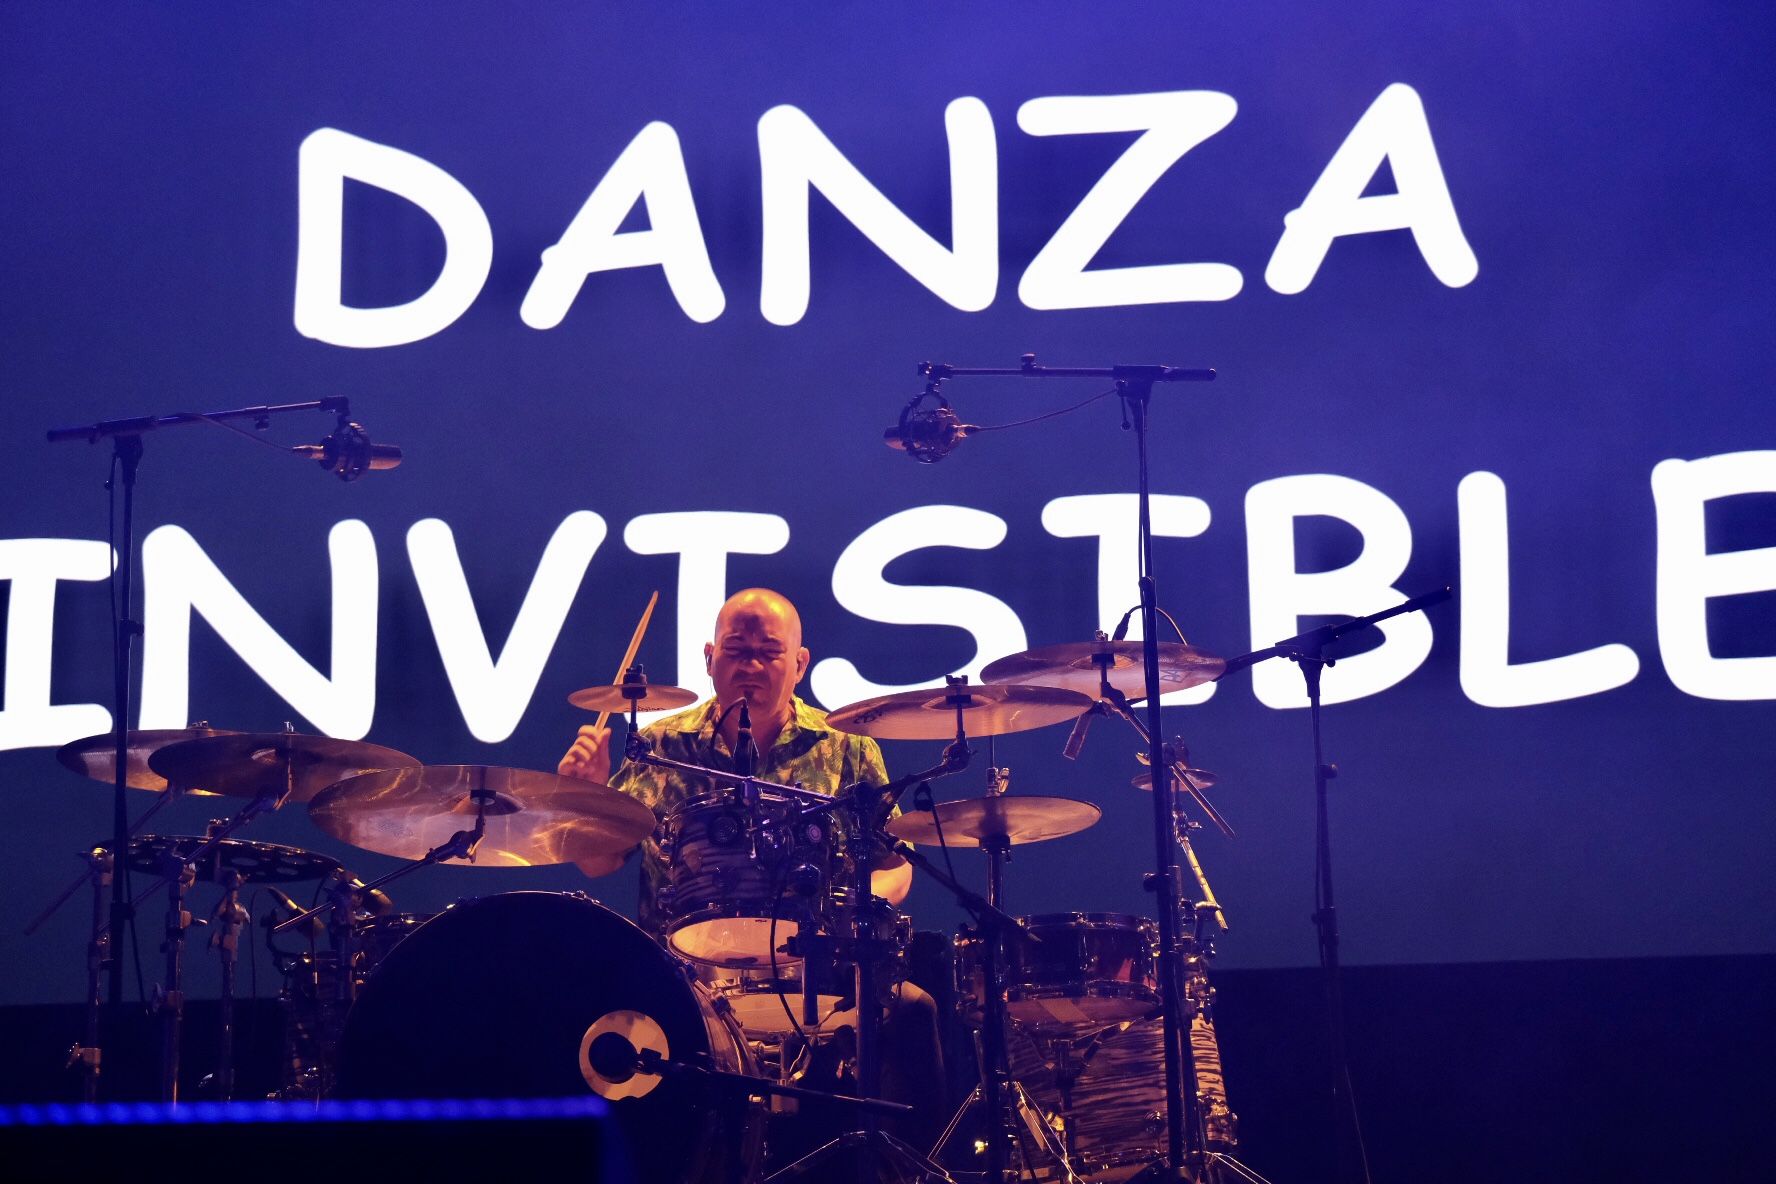 Las imágenes del concierto de Danza Invisible en el Brisa Festival.